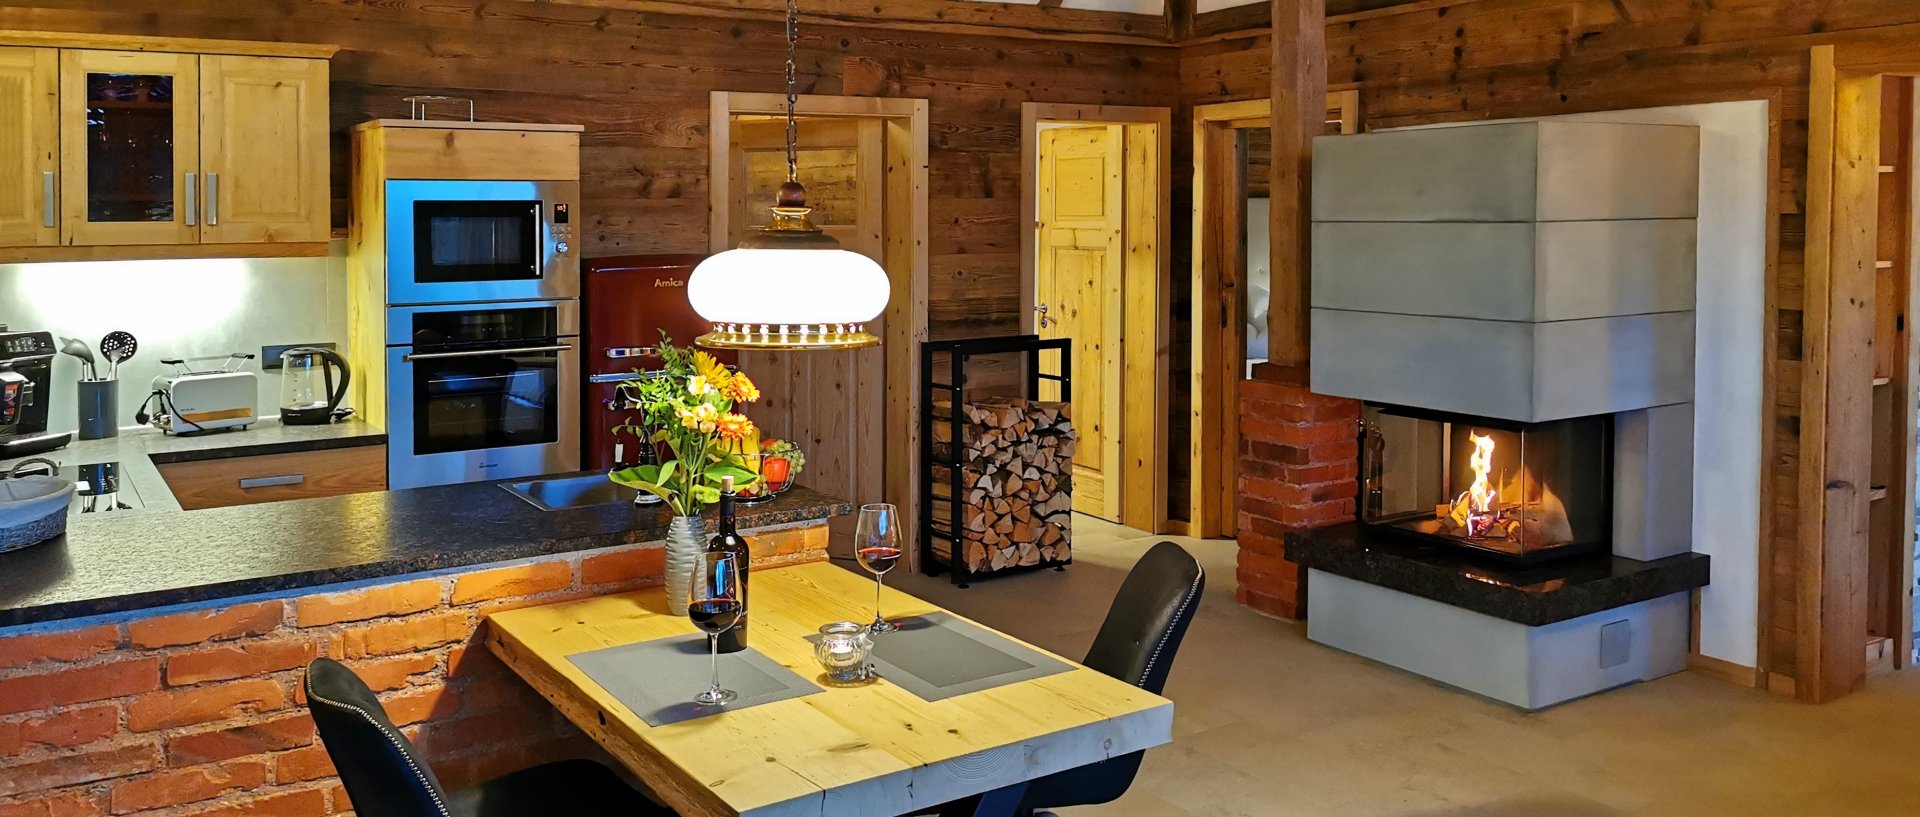 Bayerischer Wald Luxus Chalets für 2 Personen mit Whirlpool, Kaminofen, Sauna